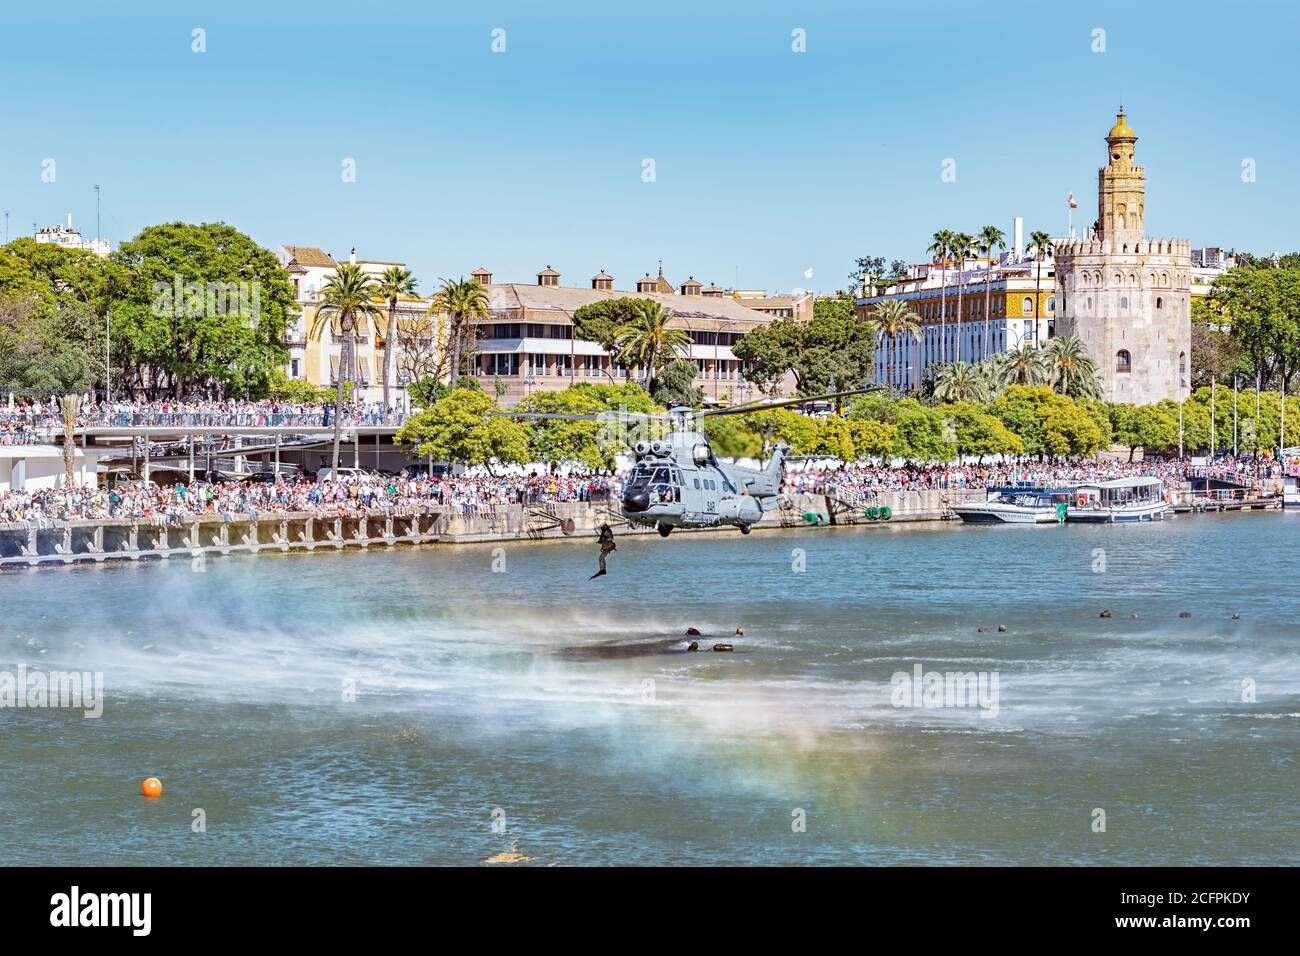 Siviglia, Spagna - 31 maggio 2019: Elicottero militare che sorvola il fiume Guadalquivir durante la mostra della giornata delle forze armate spagnole a Siviglia, Spagna Foto Stock